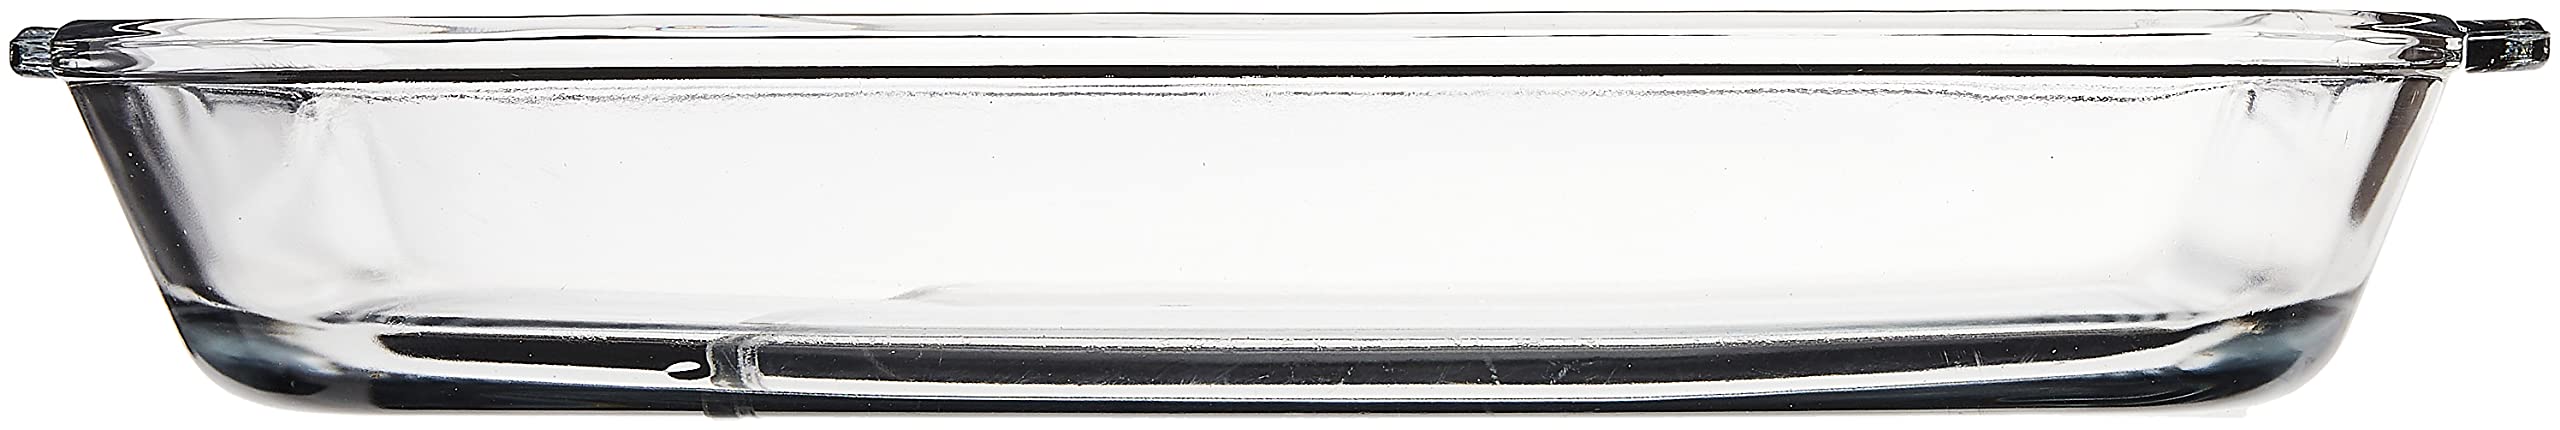 Anchor Hocking 4.8 Quart Rectangular Glass Baking Dish (1 piece, tempered tough, dishwasher safe)